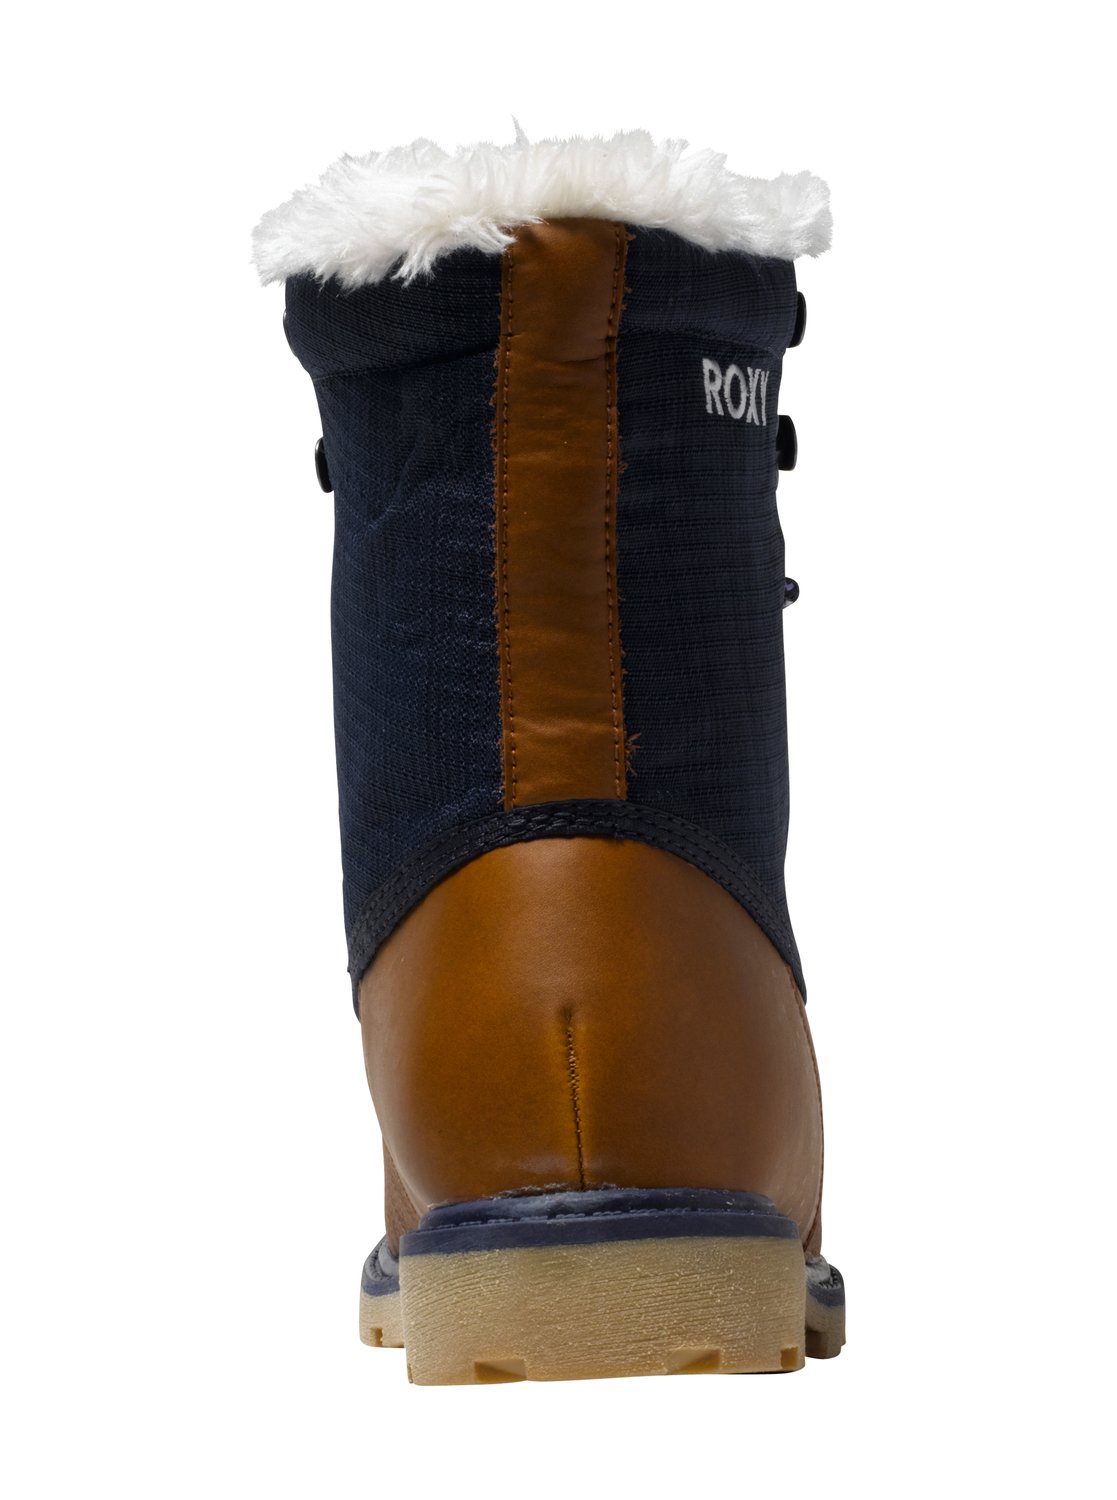 Roxy™ Himalaya - Waterproof Boots for Women ARJB500007 | eBay